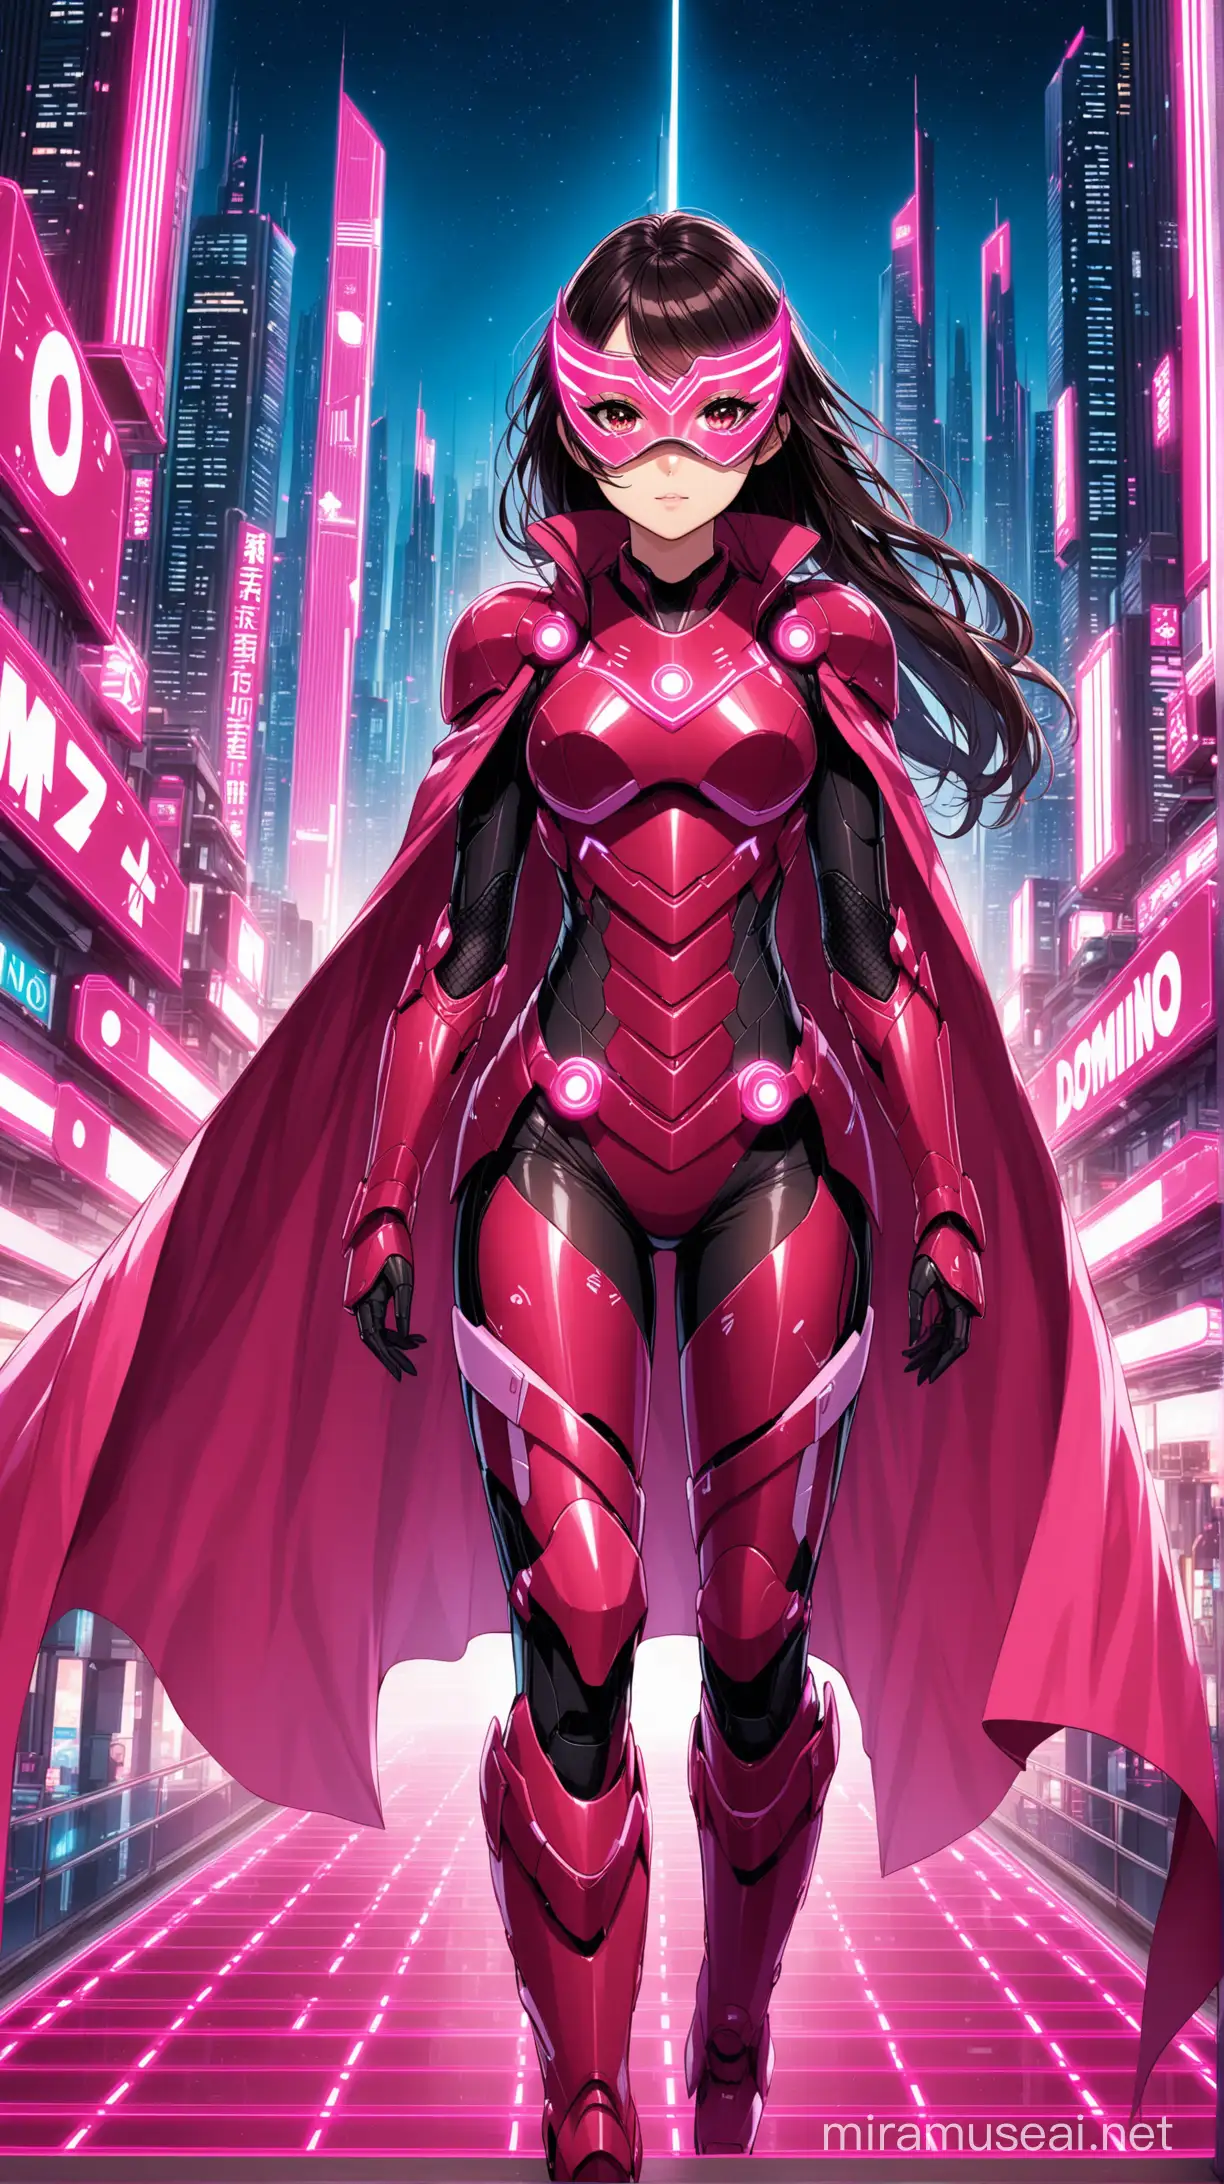 Futuristic Crimson Armored Woman in Night Cityscape